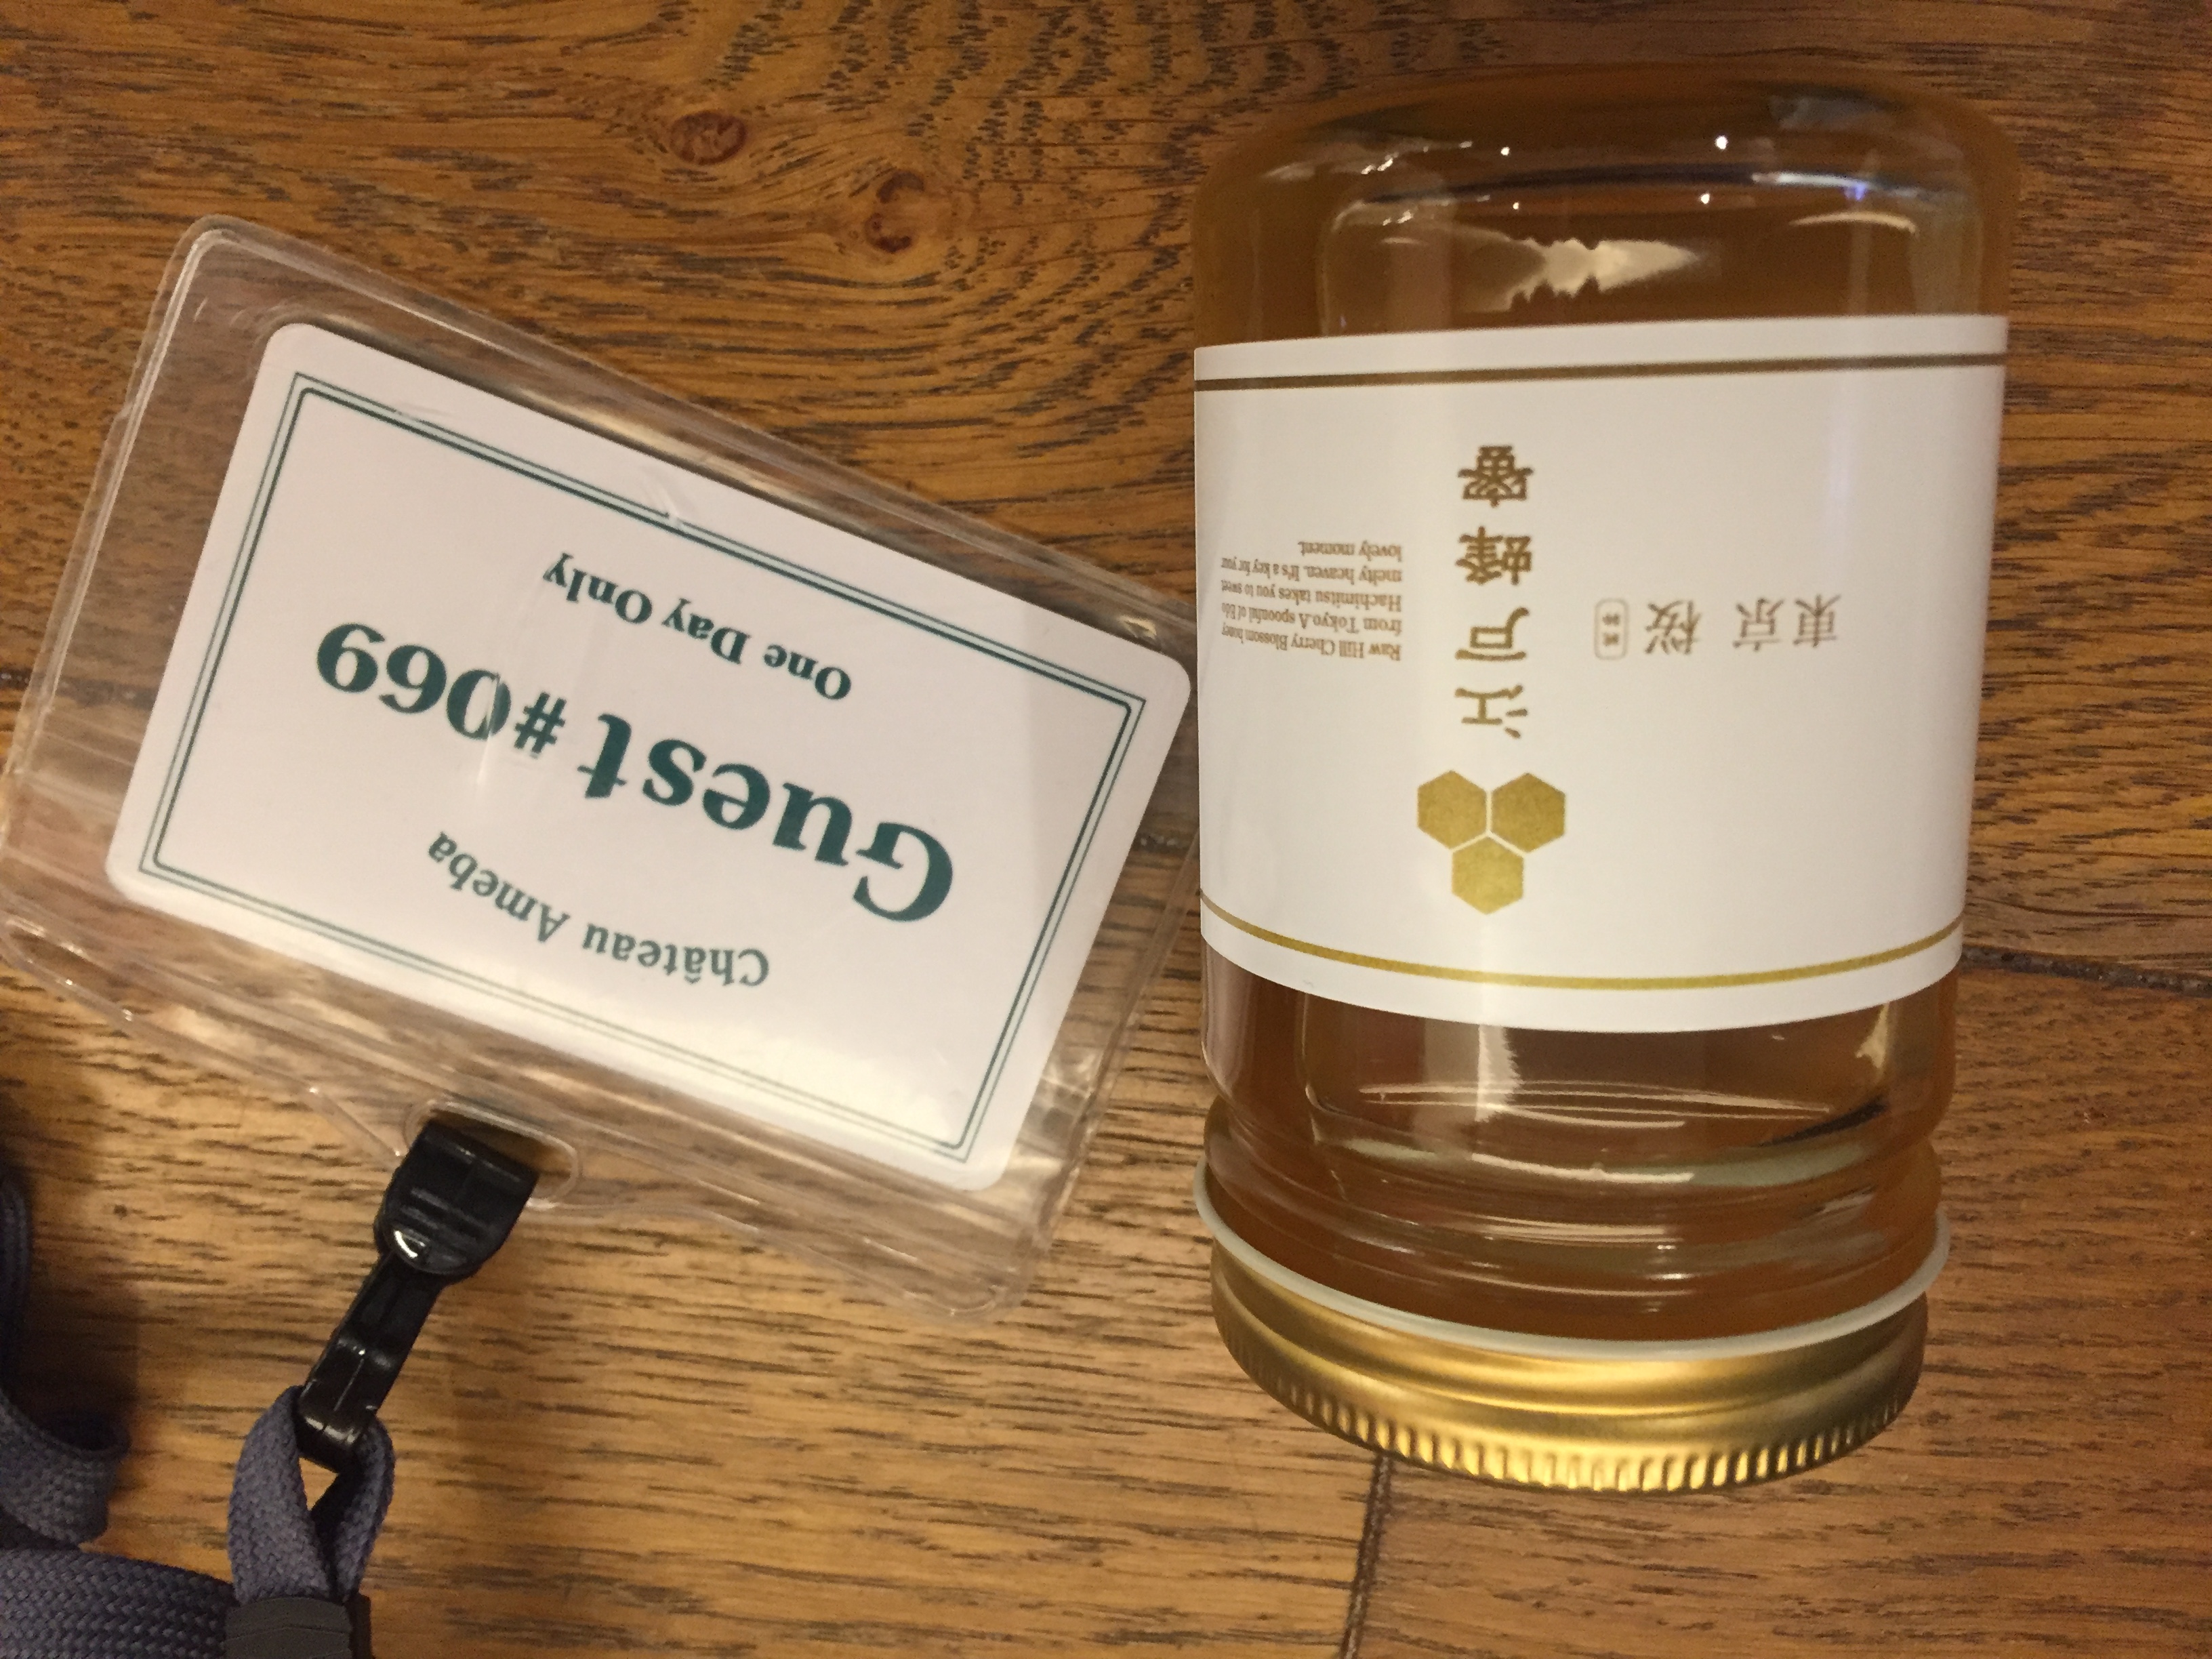 本日AbemaTVに江戸蜂蜜を配達します。